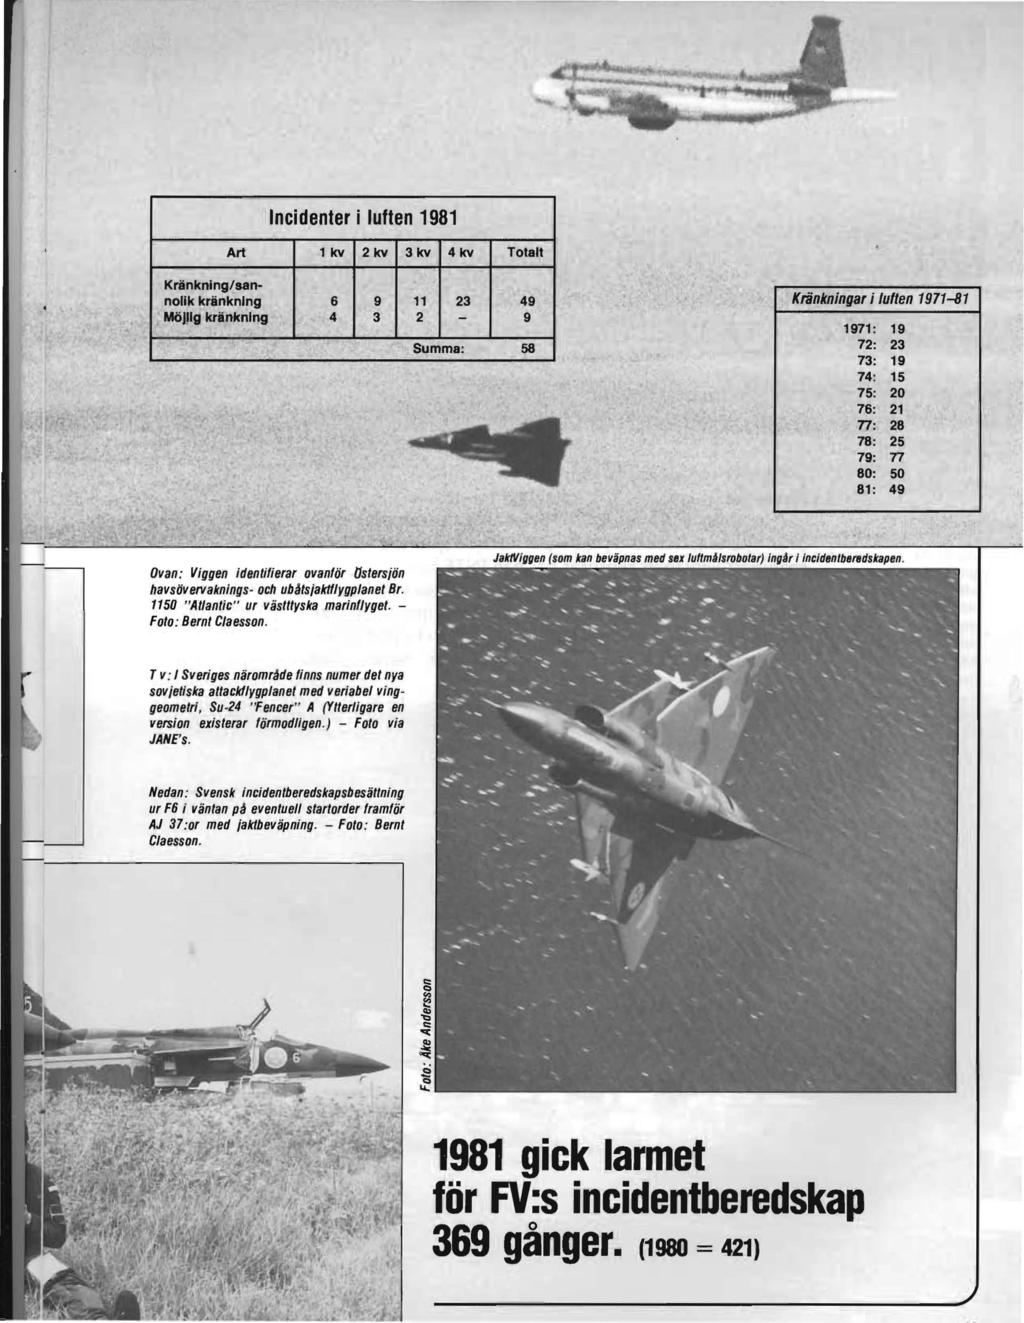 Incidenter i luften 1981 Art lkv 2kv 3kv 4kv Totalt KränknIng/sannolik kränkning 6 9 MölJlg kränkning 4 3 11 23 49 2 9 Summa: 58.